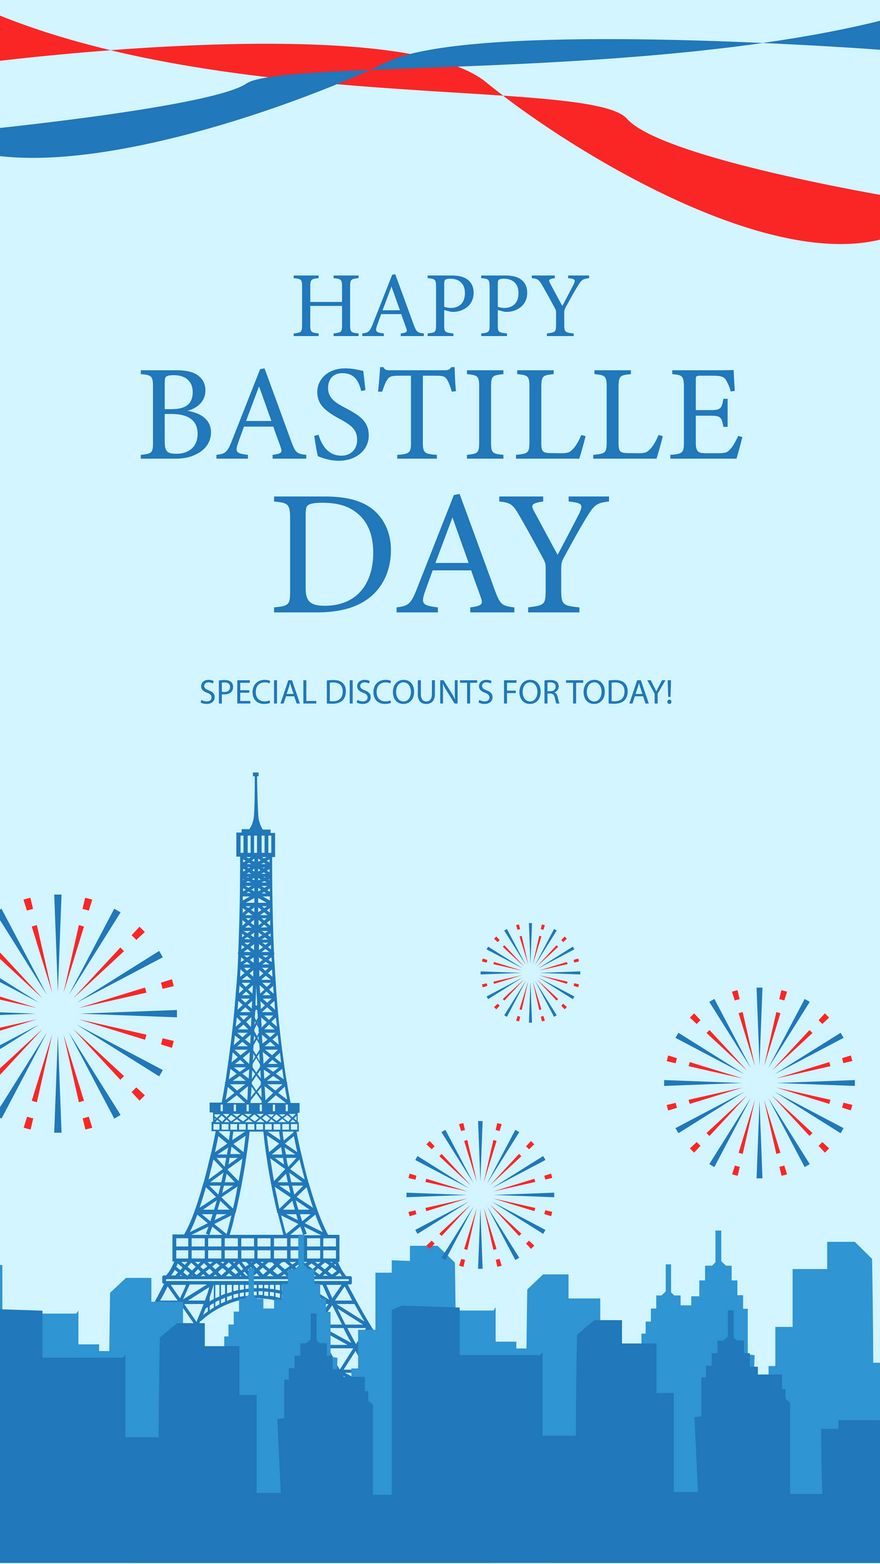 Bastille Day Invitation Background in PDF, Illustrator, PSD, EPS, SVG, JPG, PNG